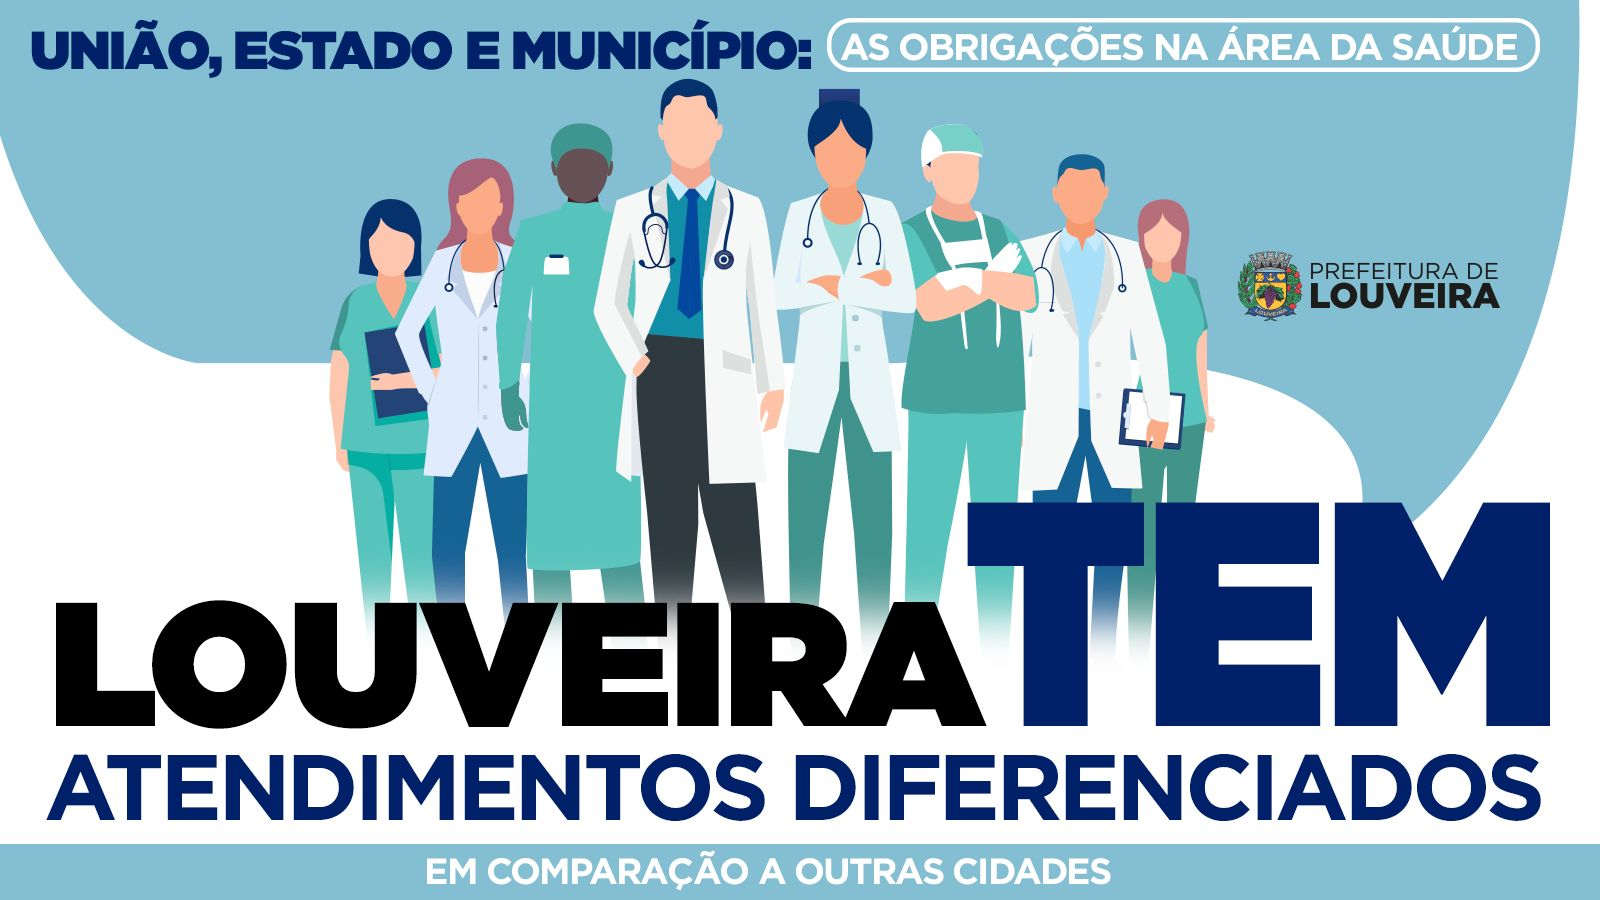 União, Estado e Município: Louveira apresenta atendimentos diferenciados na  área da saúde